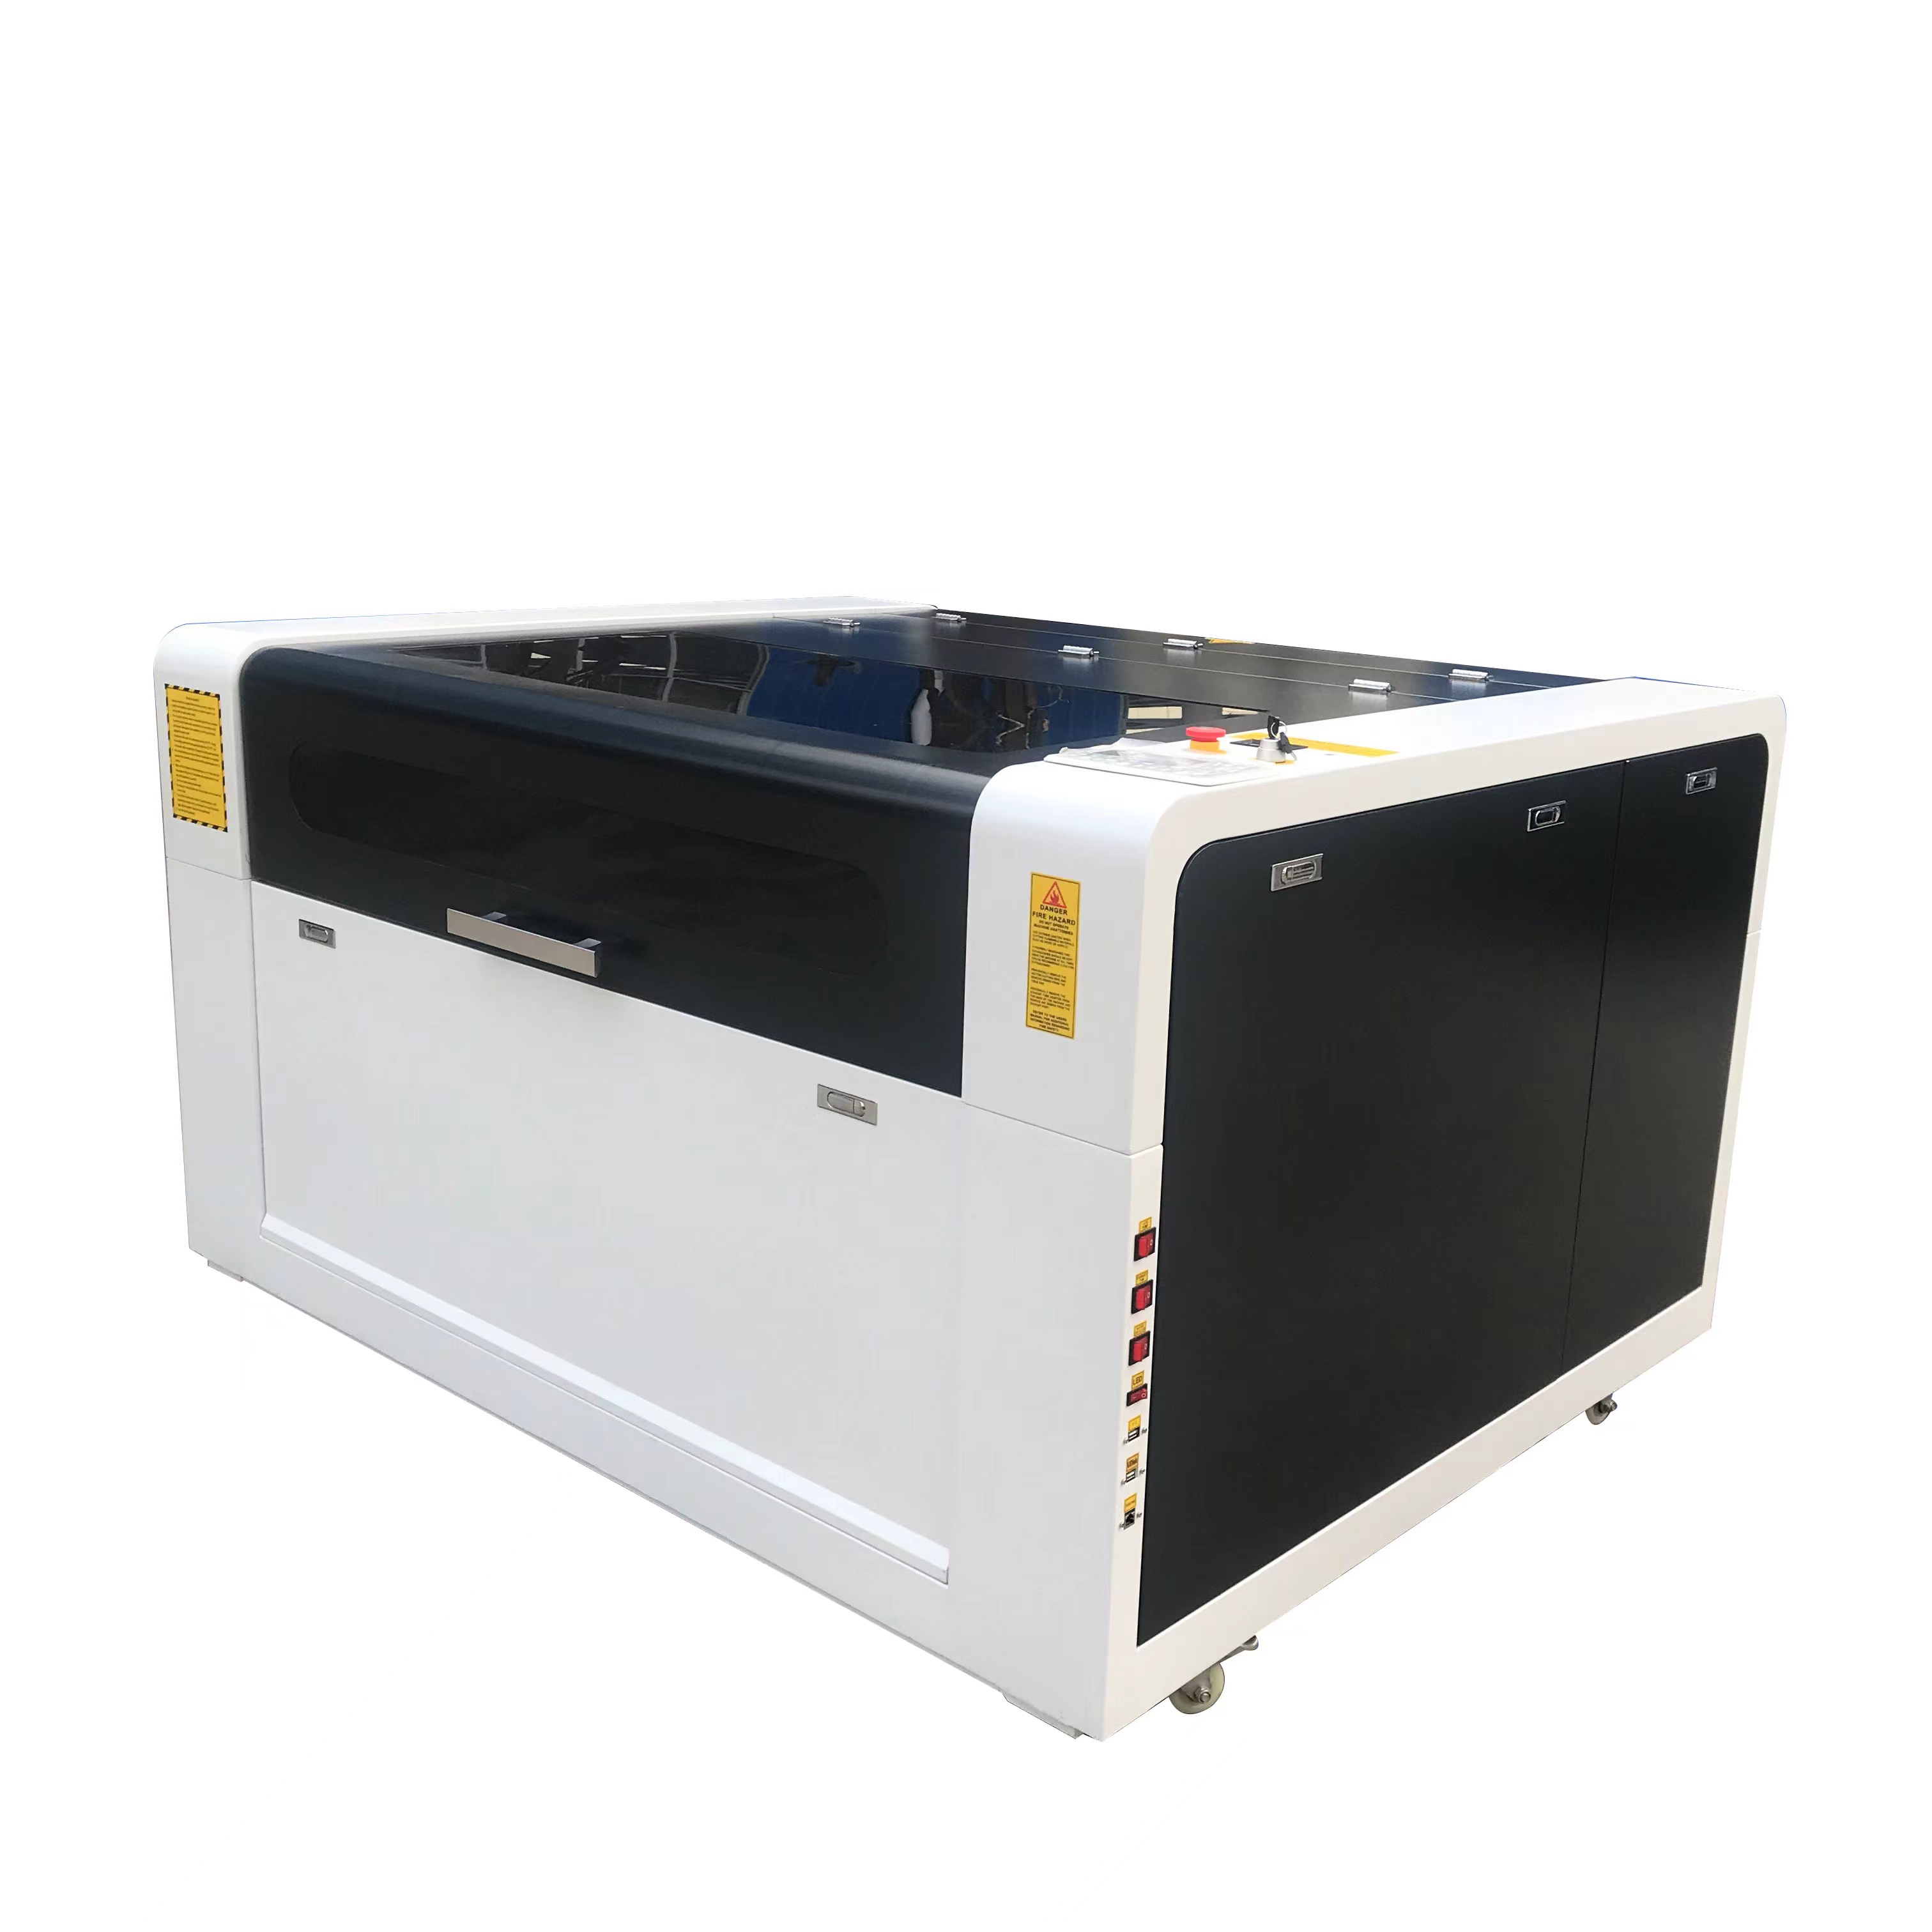 Envío rápido China marca famosa buen precio CNC 150w Co2 1390 máquina de corte por láser